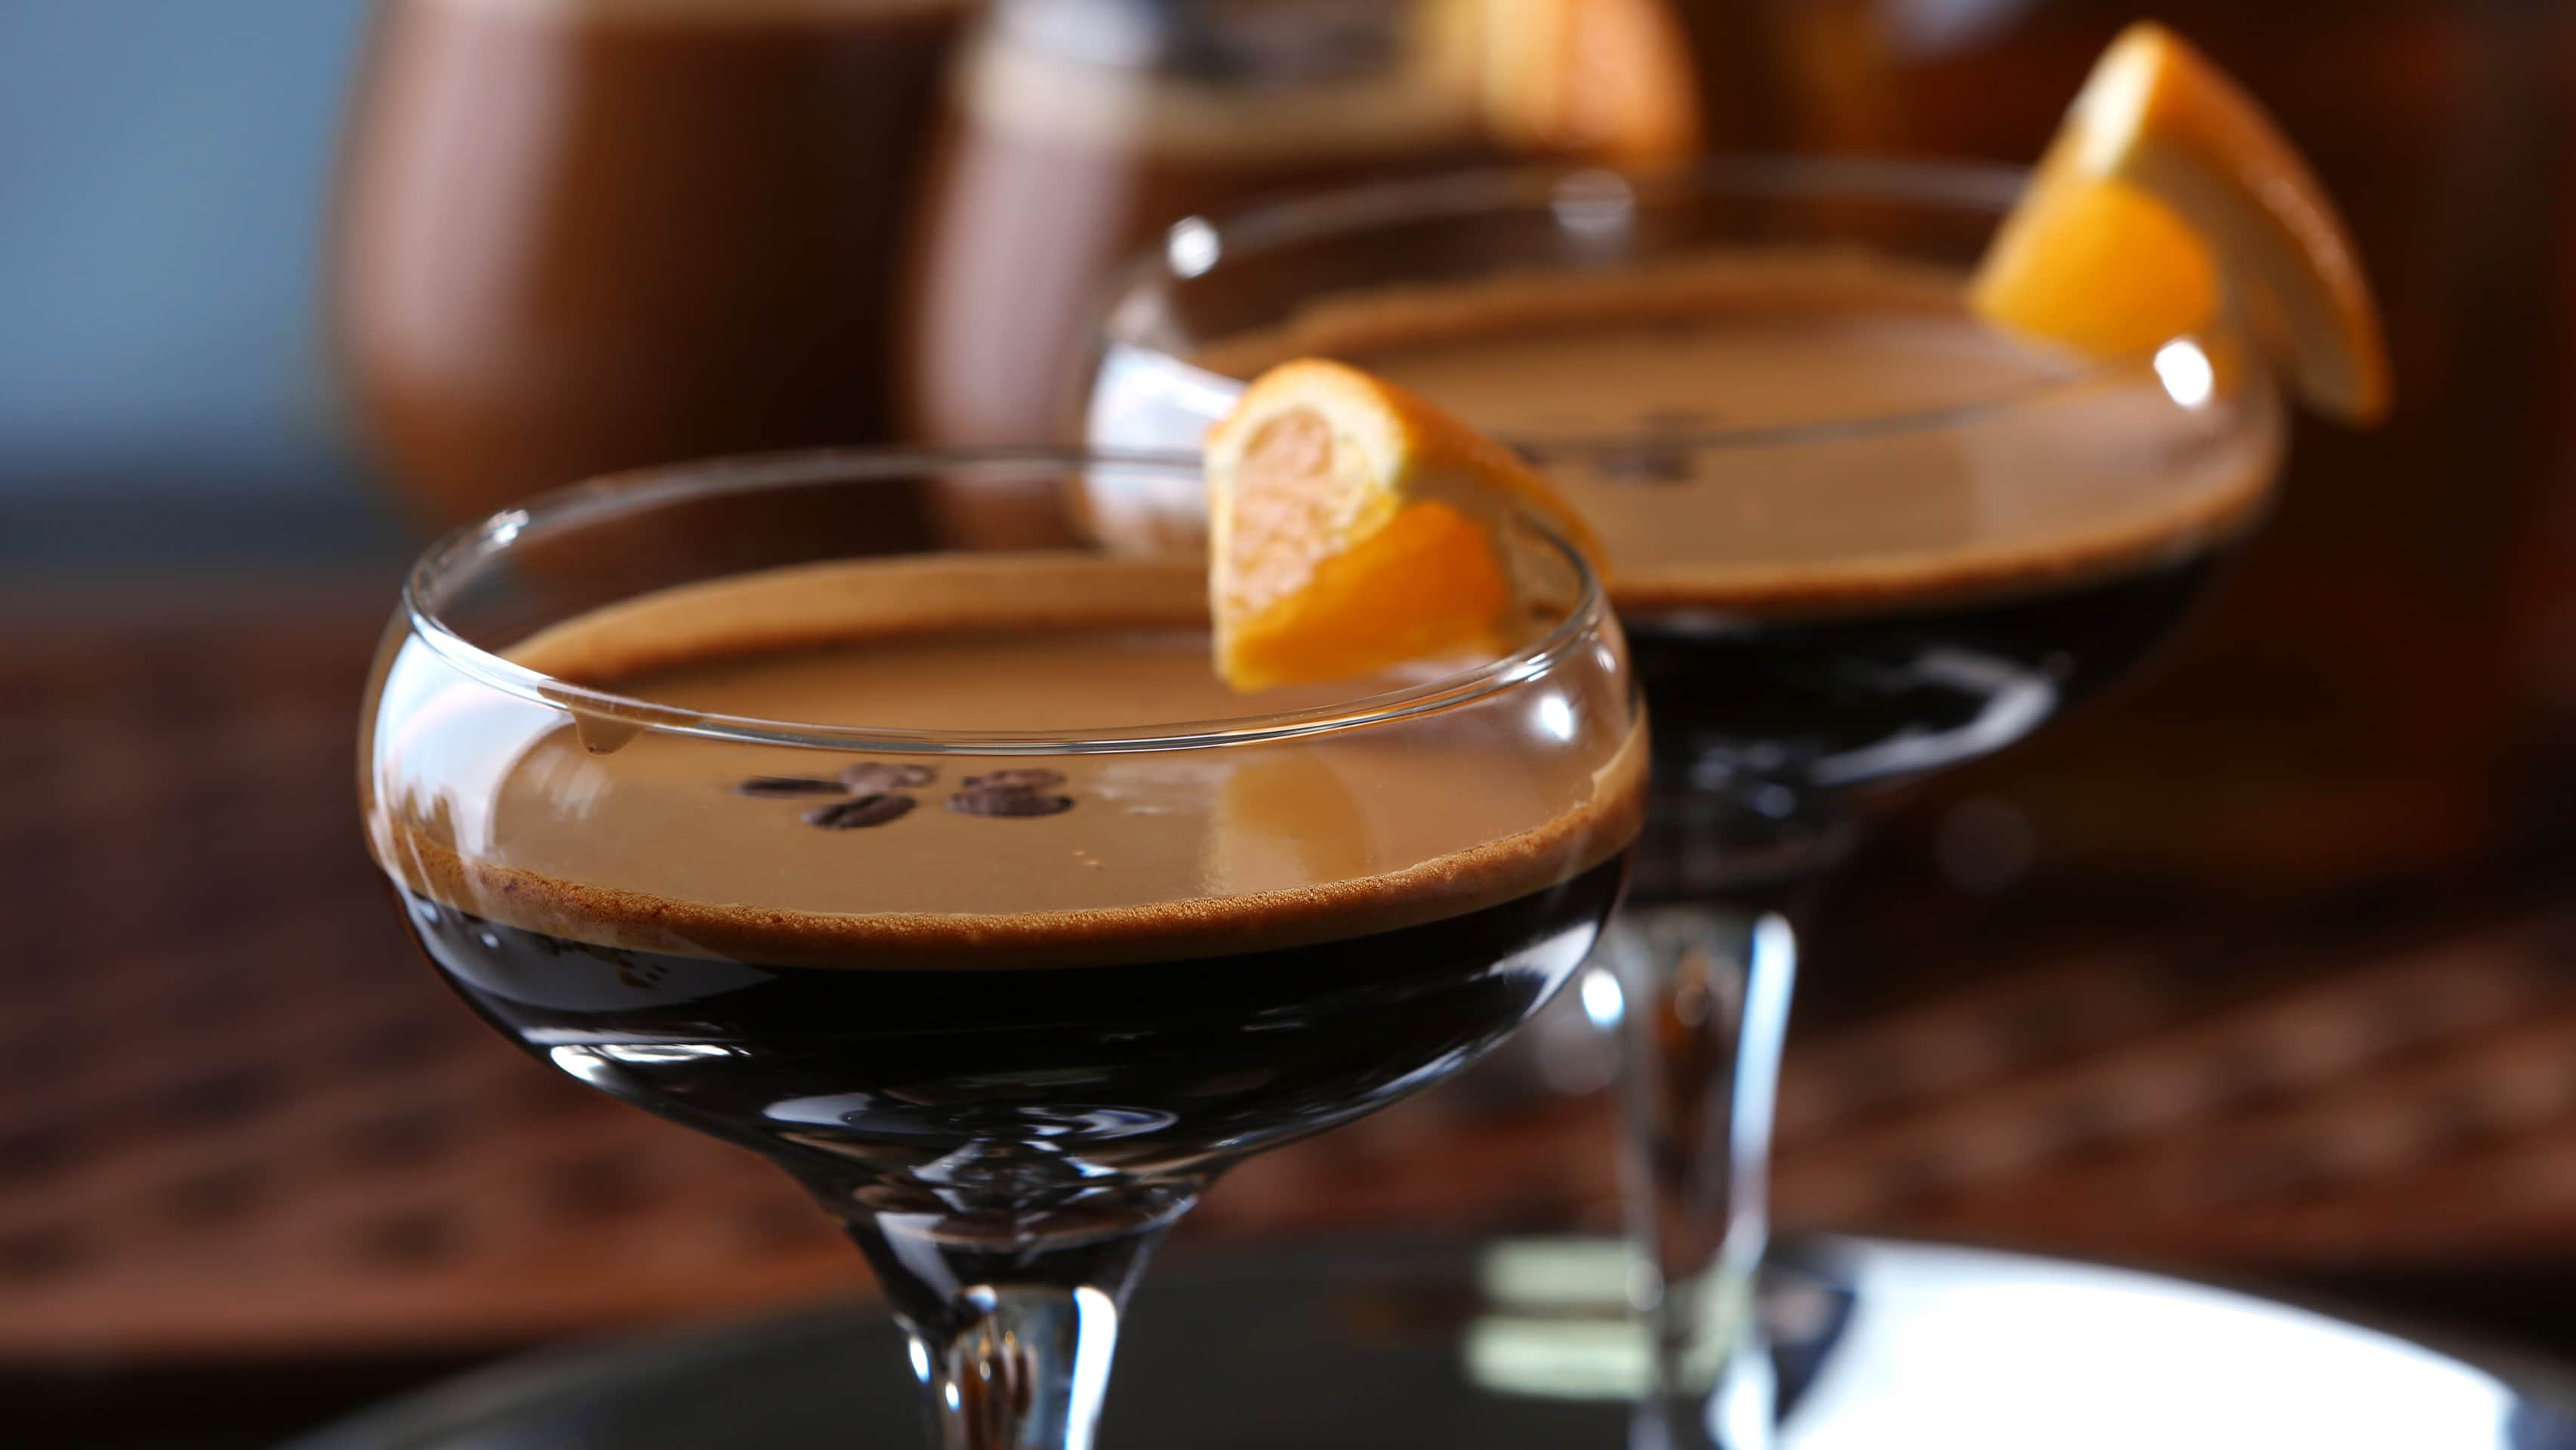 Zwei Chocolate Orange Espresso Martini in Martinigläsern mit Garnitur auf dunklem Untergrund. Frontalansicht.